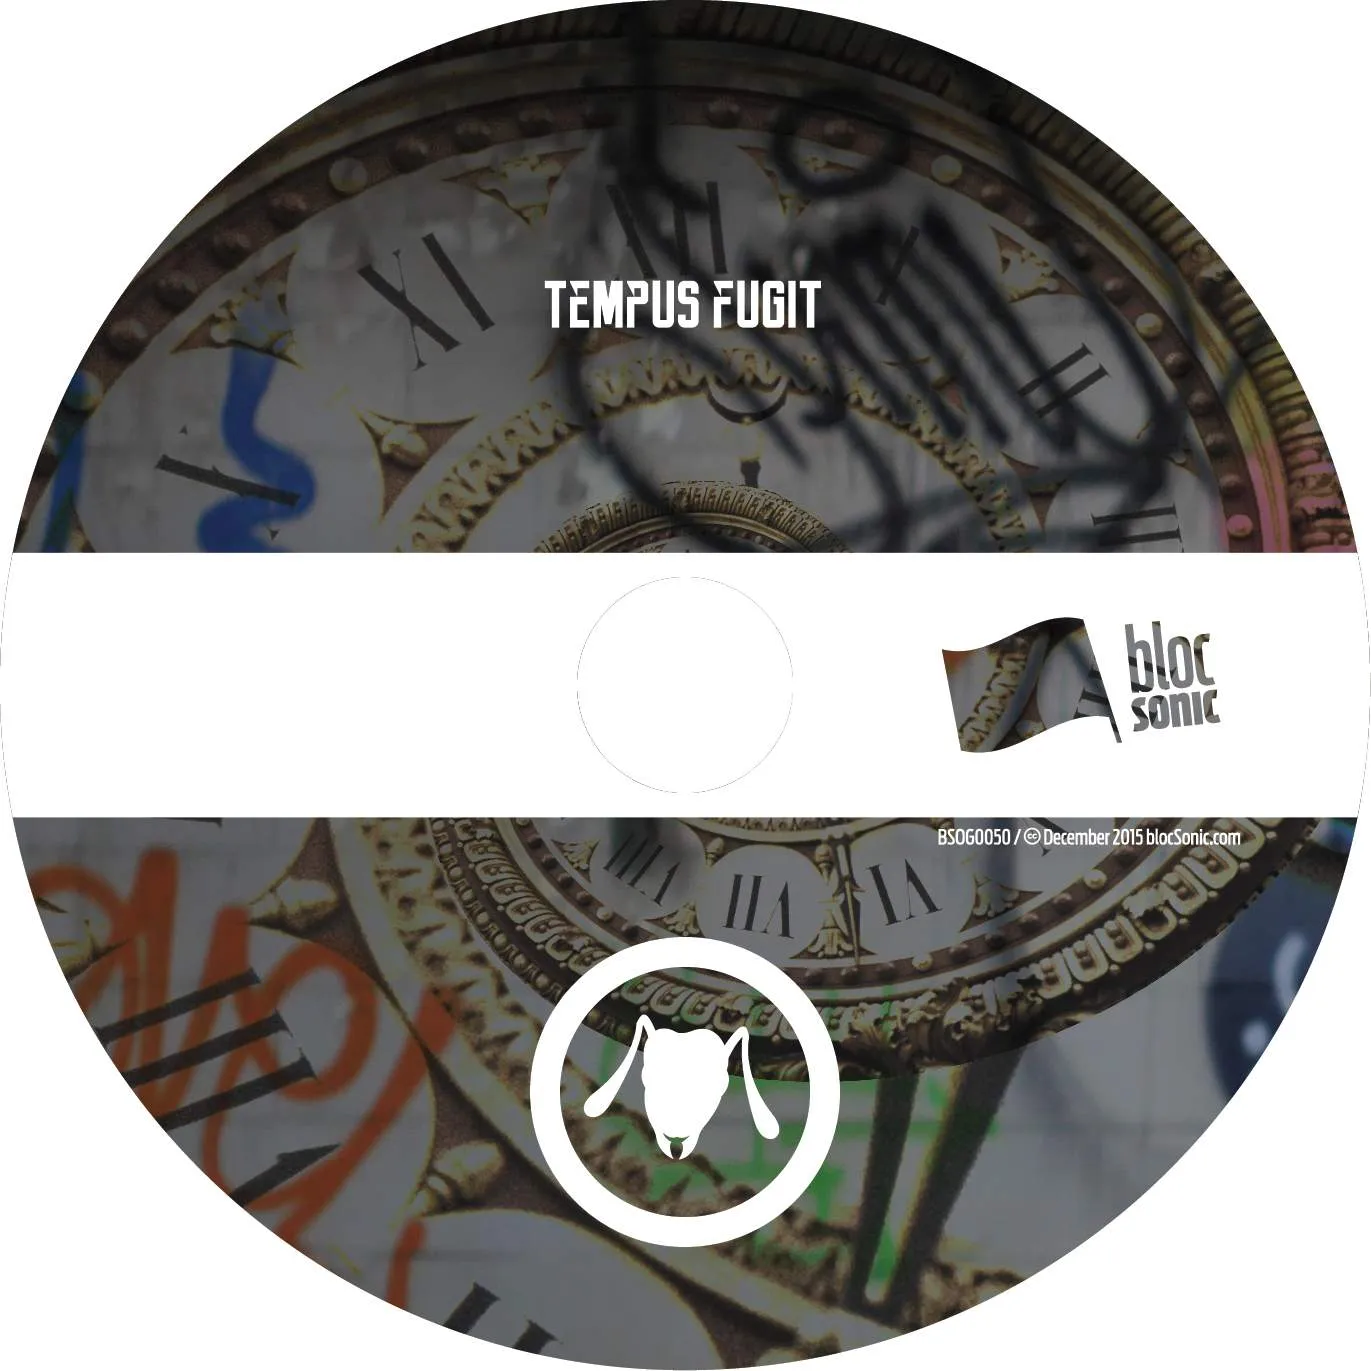 Album disc for “Tempus Fugit” by Ant The Symbol